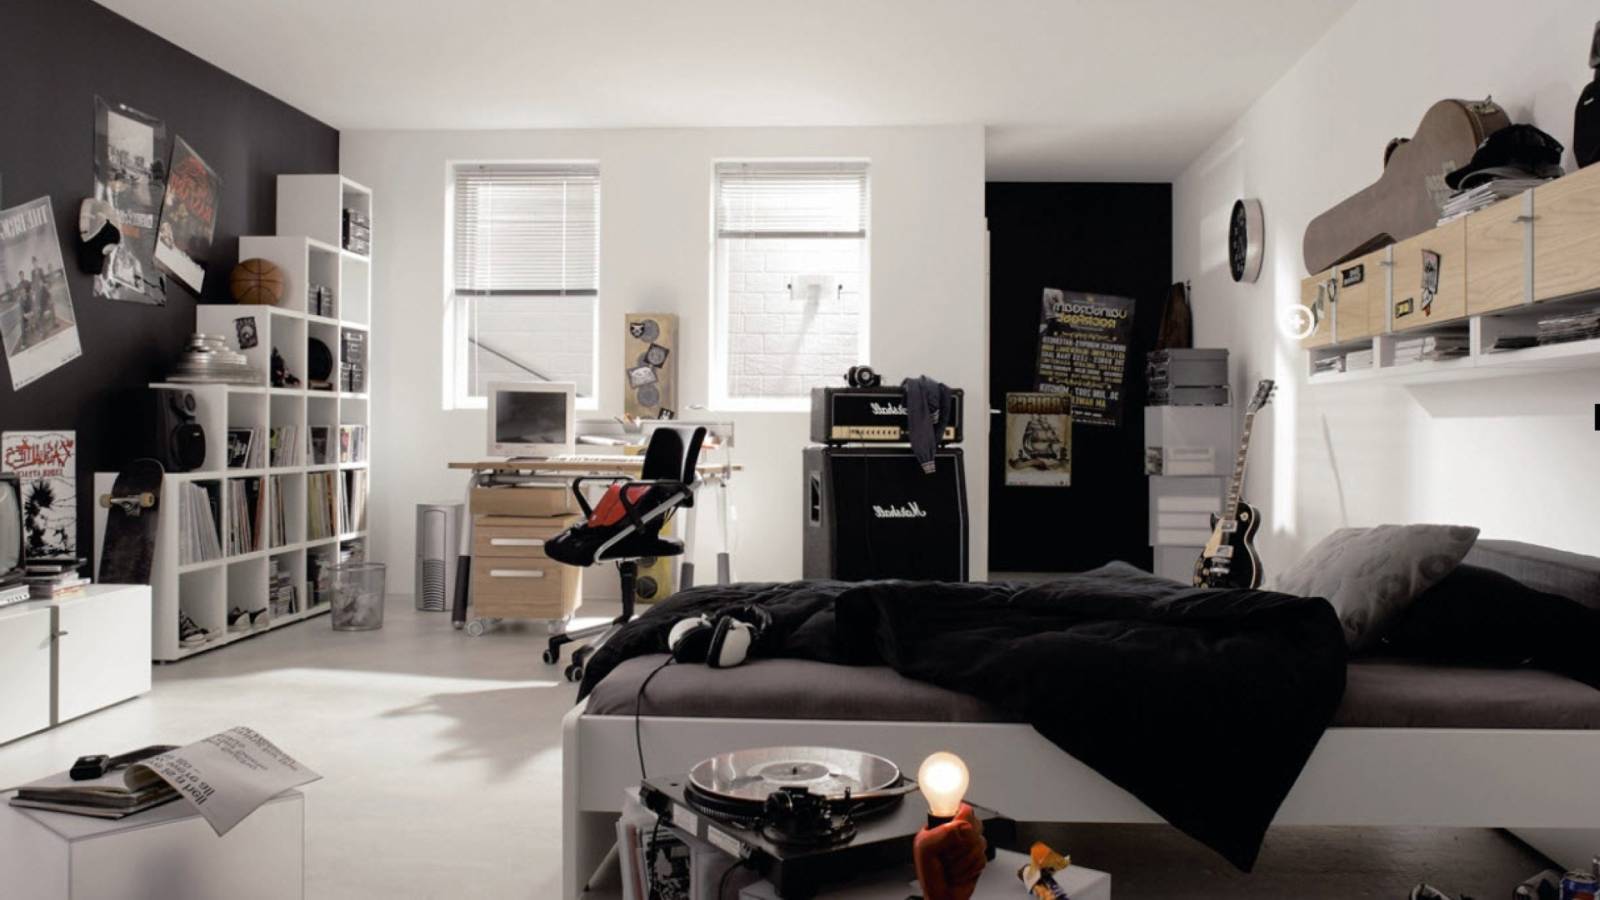 7 Amazing Room Ideas For Boy In Black And White - Interior Design Inspirati...